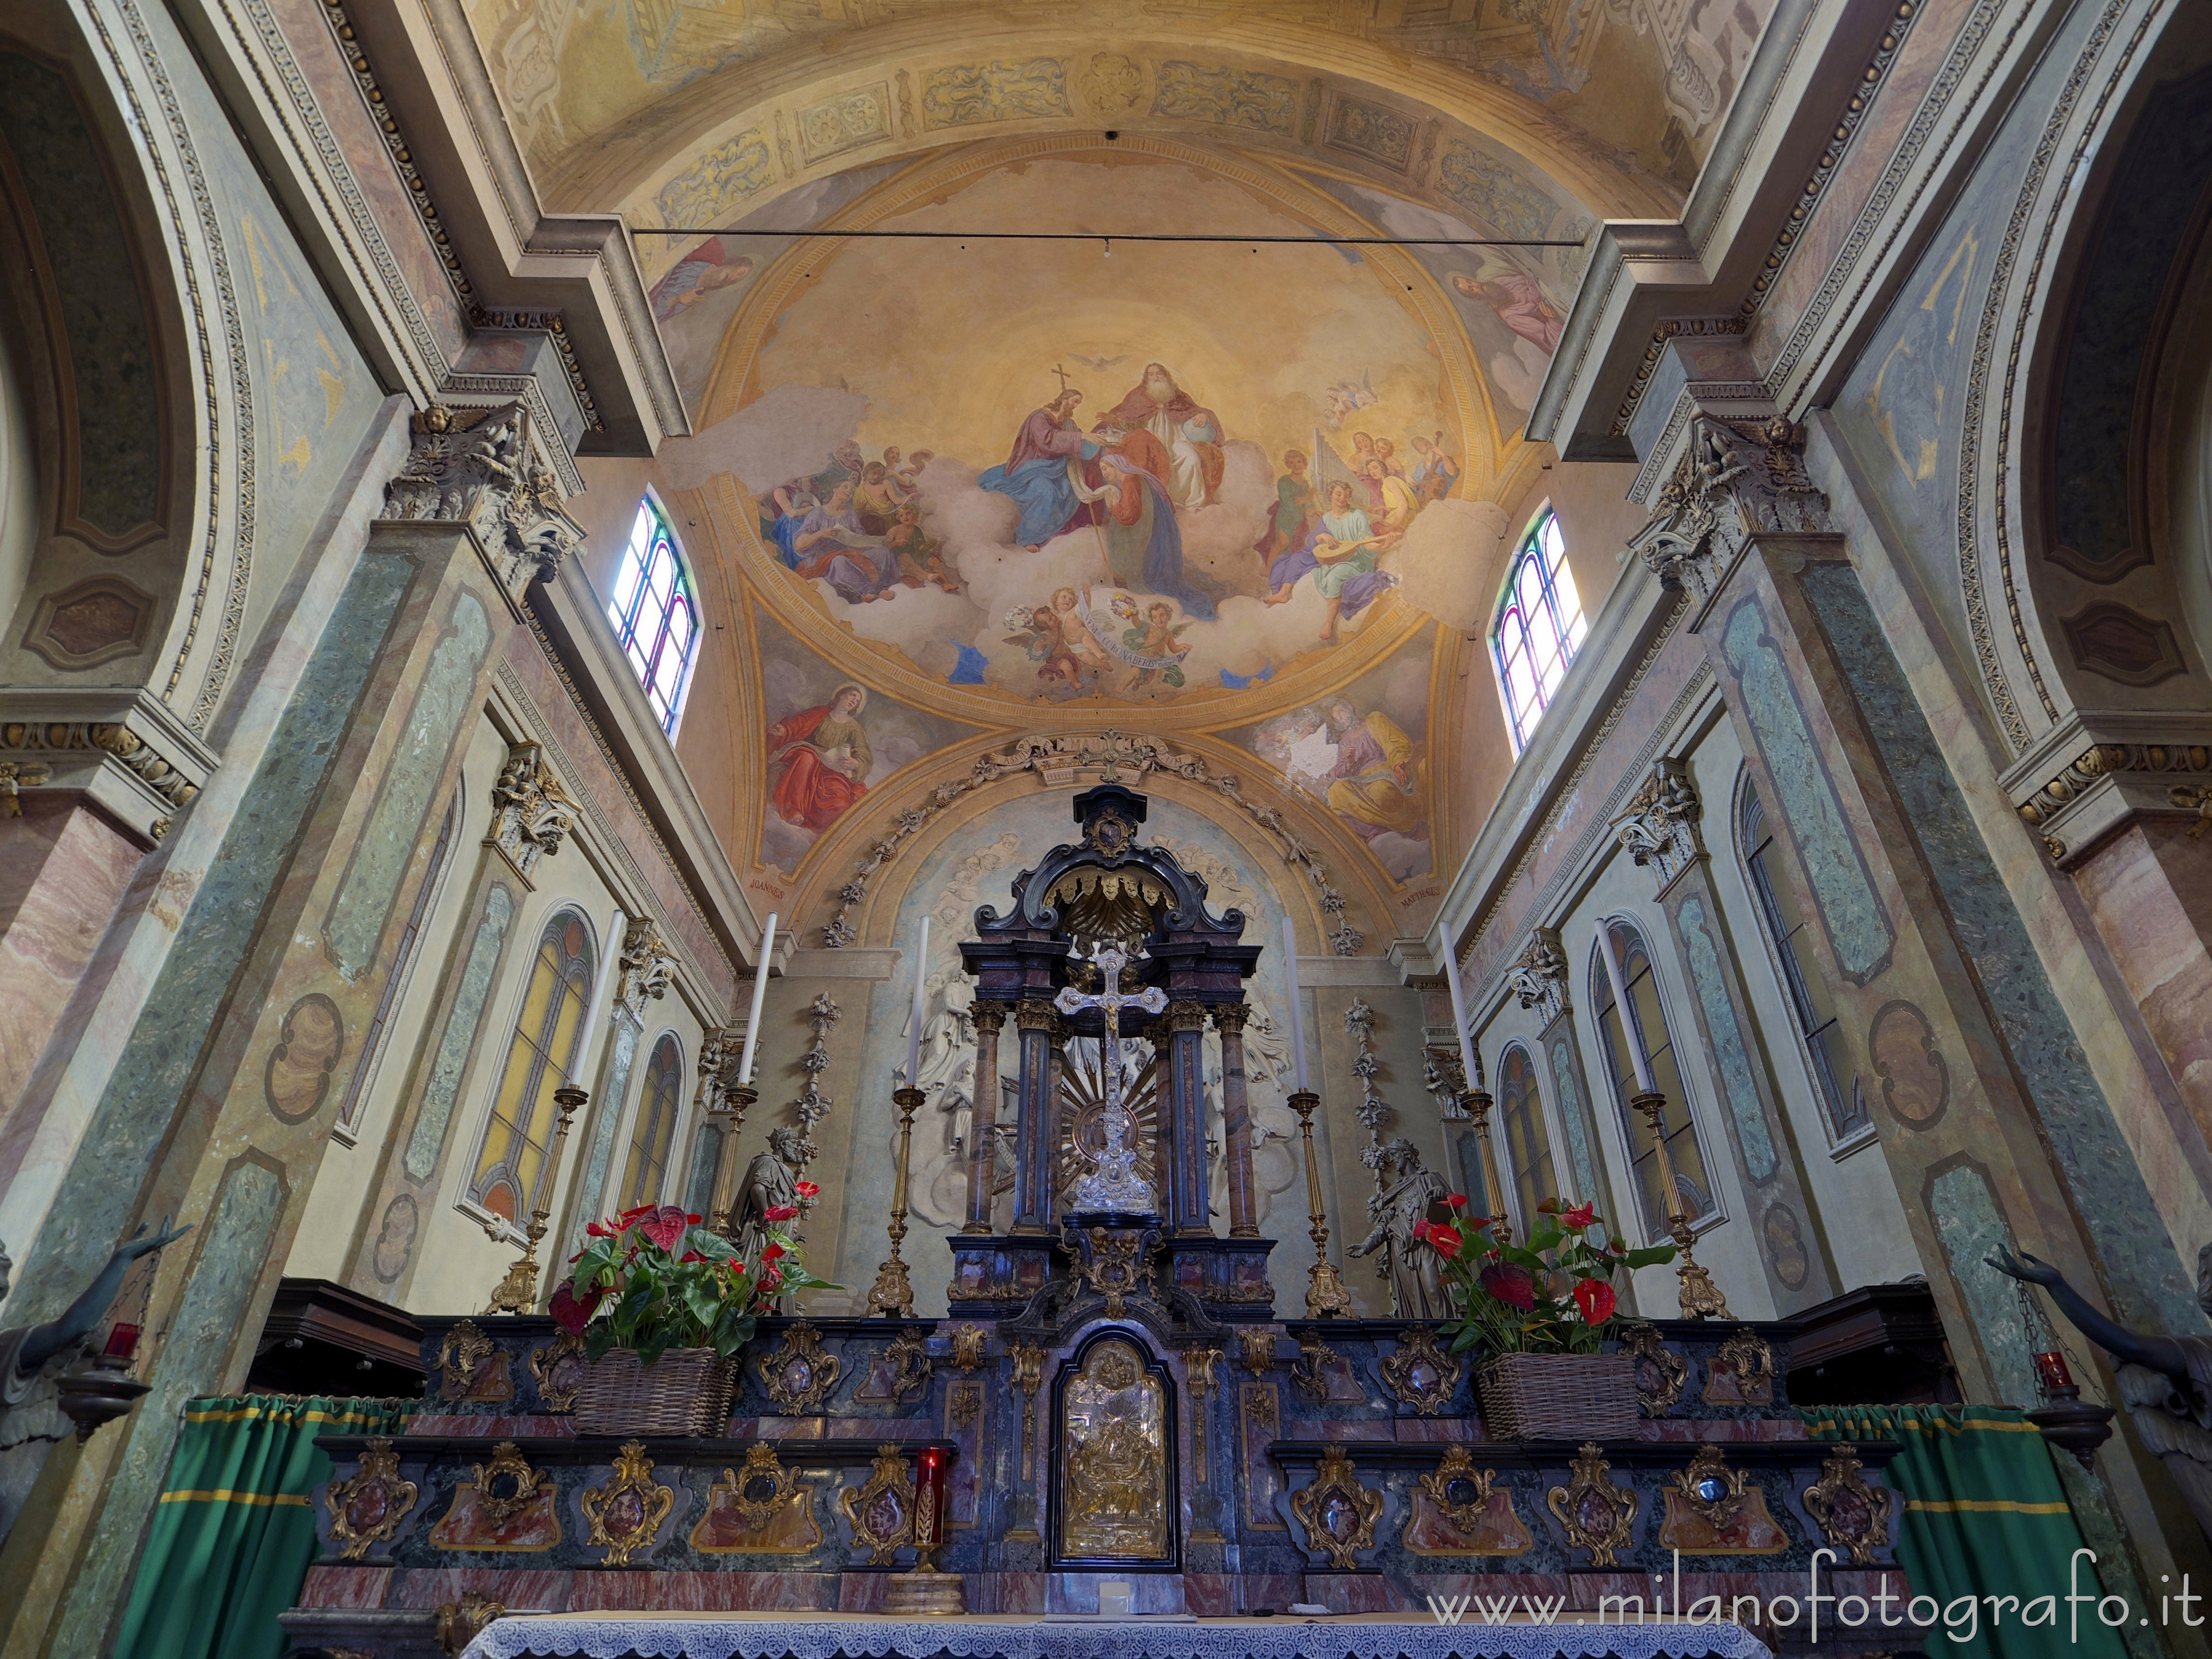 Monza (Monza e Brianza): Altare maggiore e abside della Chiesa di Santa Maria di Carrobiolo - Monza (Monza e Brianza)